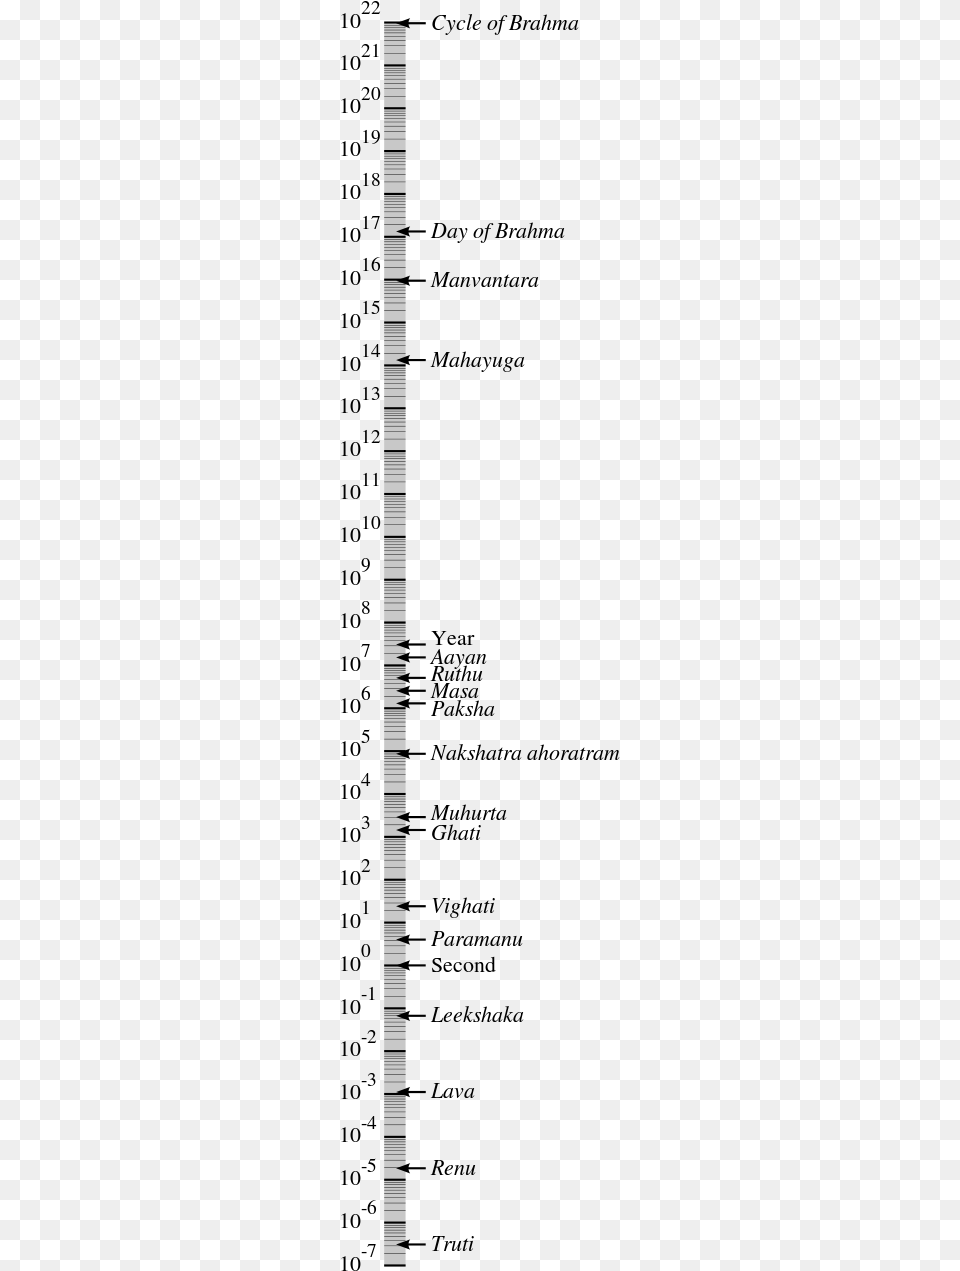 Manvantara In Hindu Units Of Time Measurement On A Vashisht Rishi Family Tree, Text Png Image